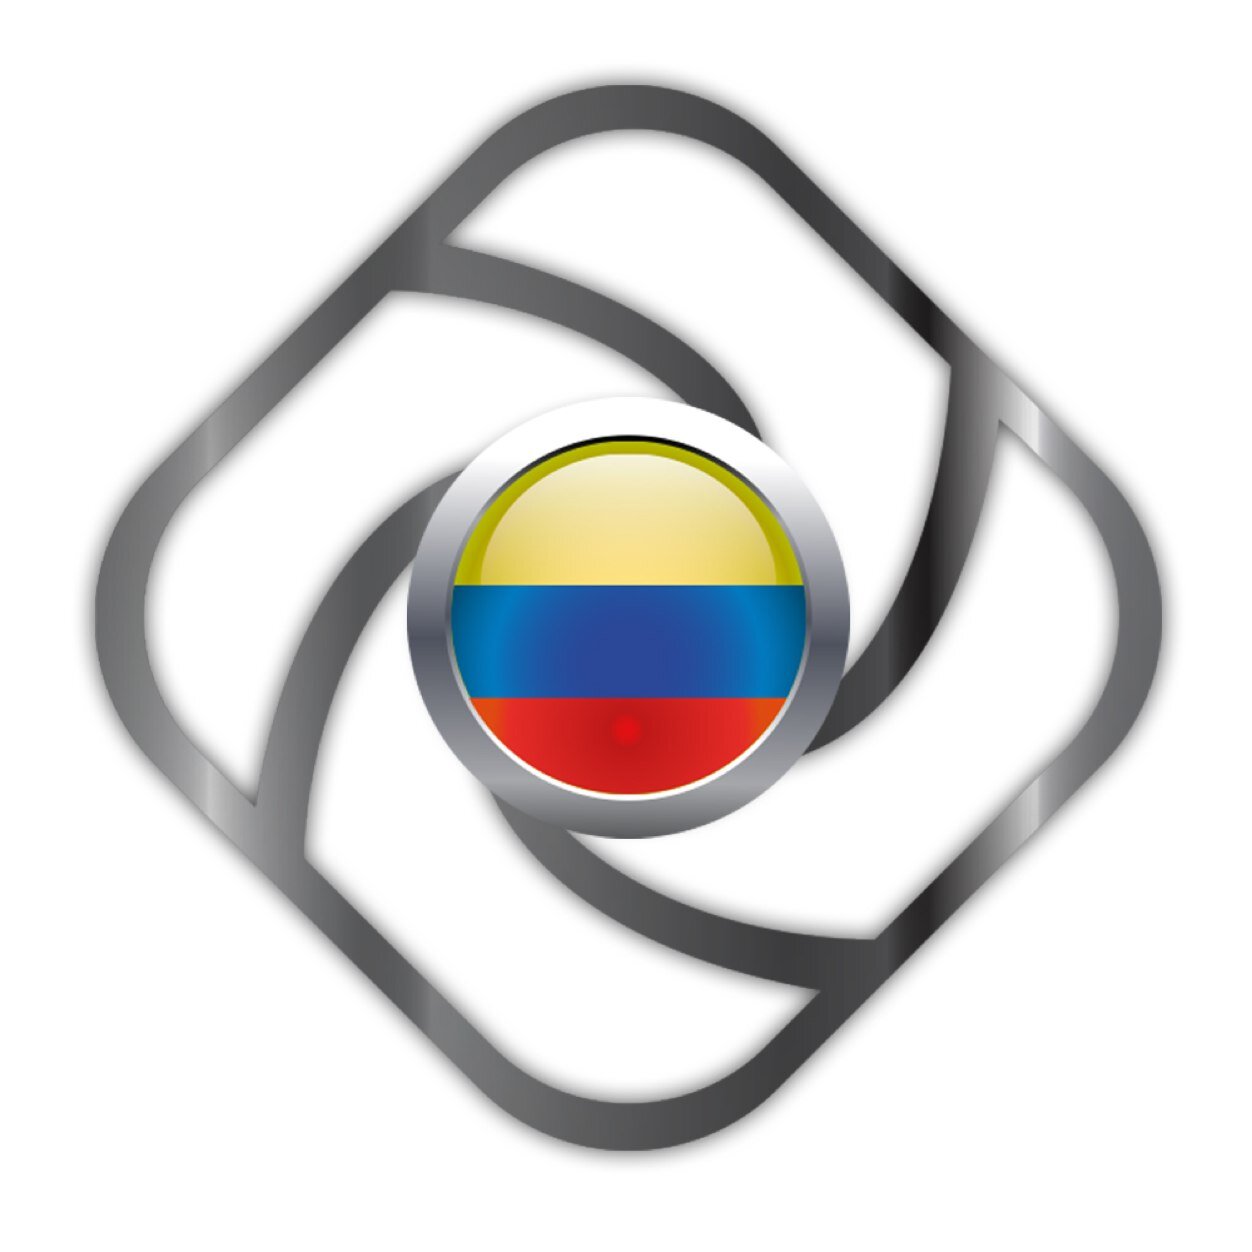 CUENTA OFICIAL de comunidad COLOMBIANA de Instagramers. Información, noticias y aplicaciones del mundo de iphotografía. Compartan sus fotos. desde 2011